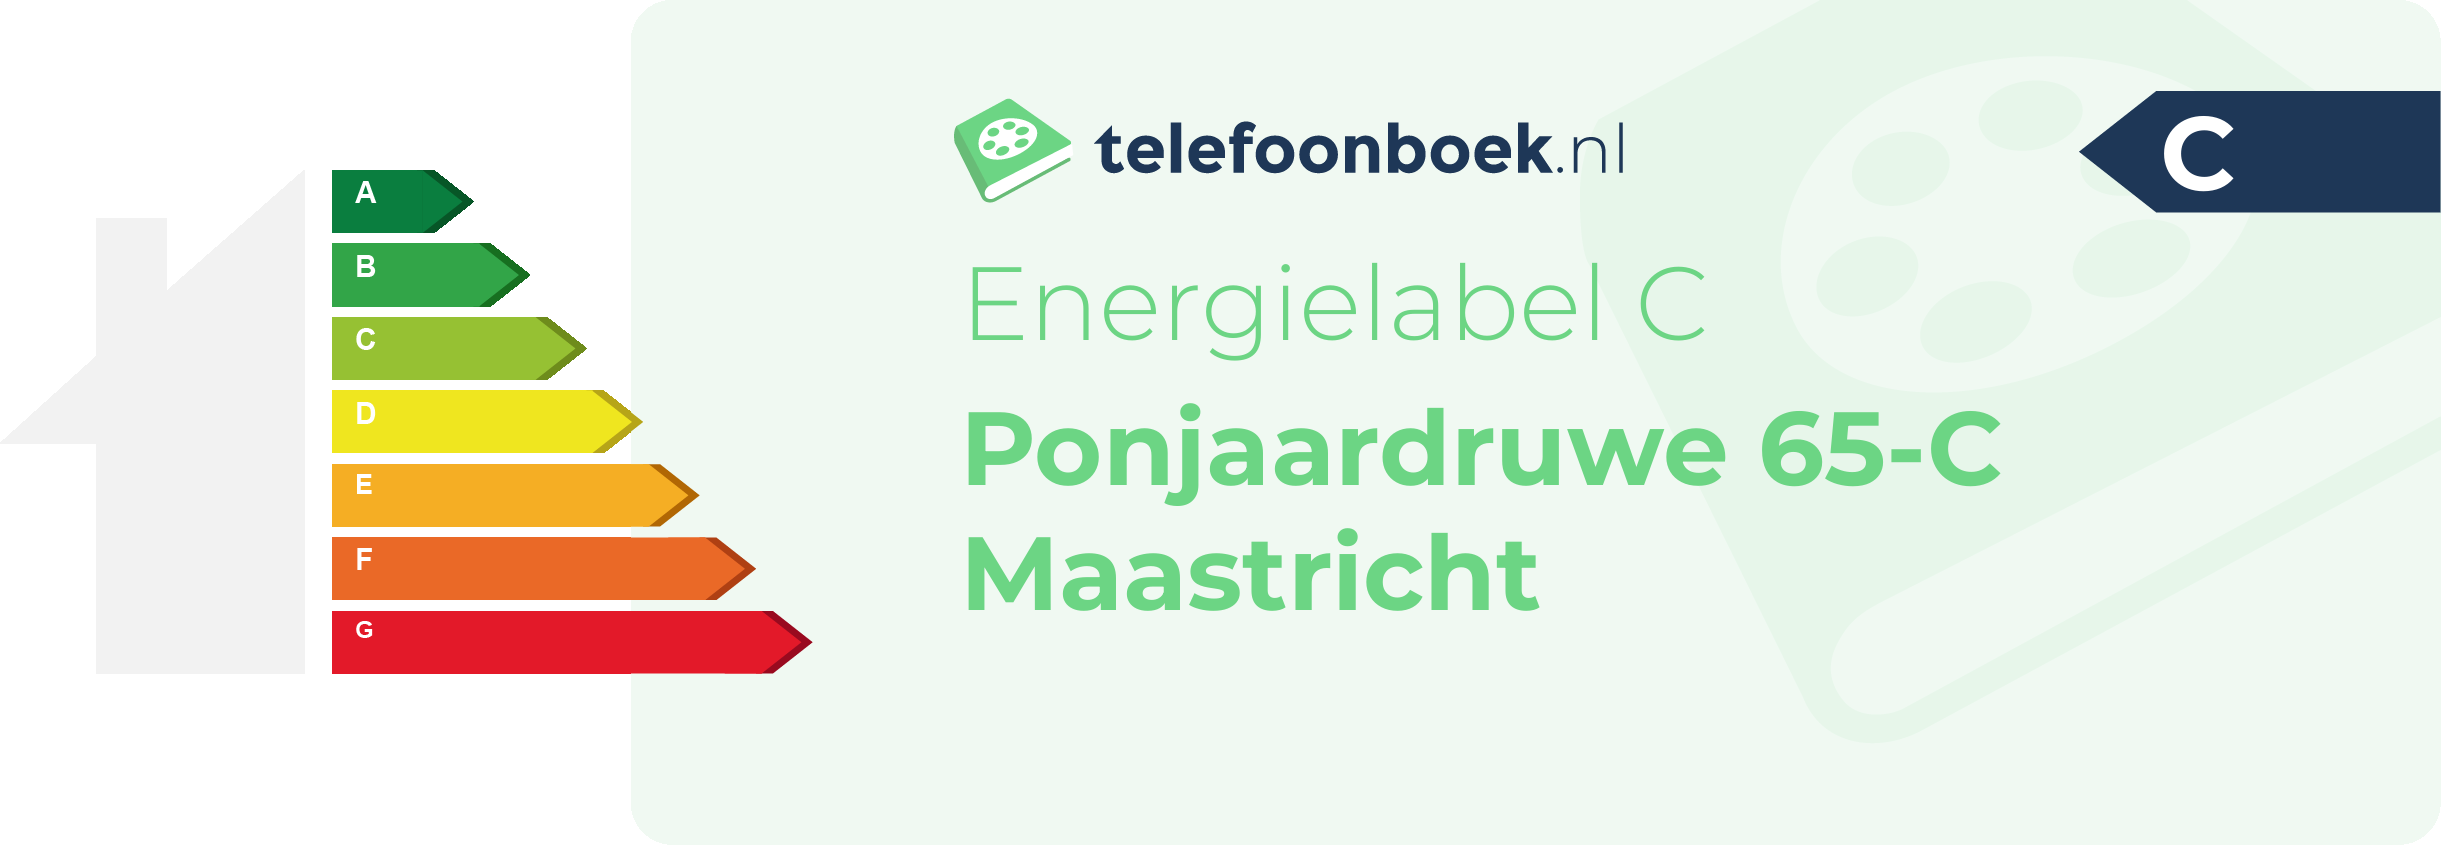 Energielabel Ponjaardruwe 65-C Maastricht